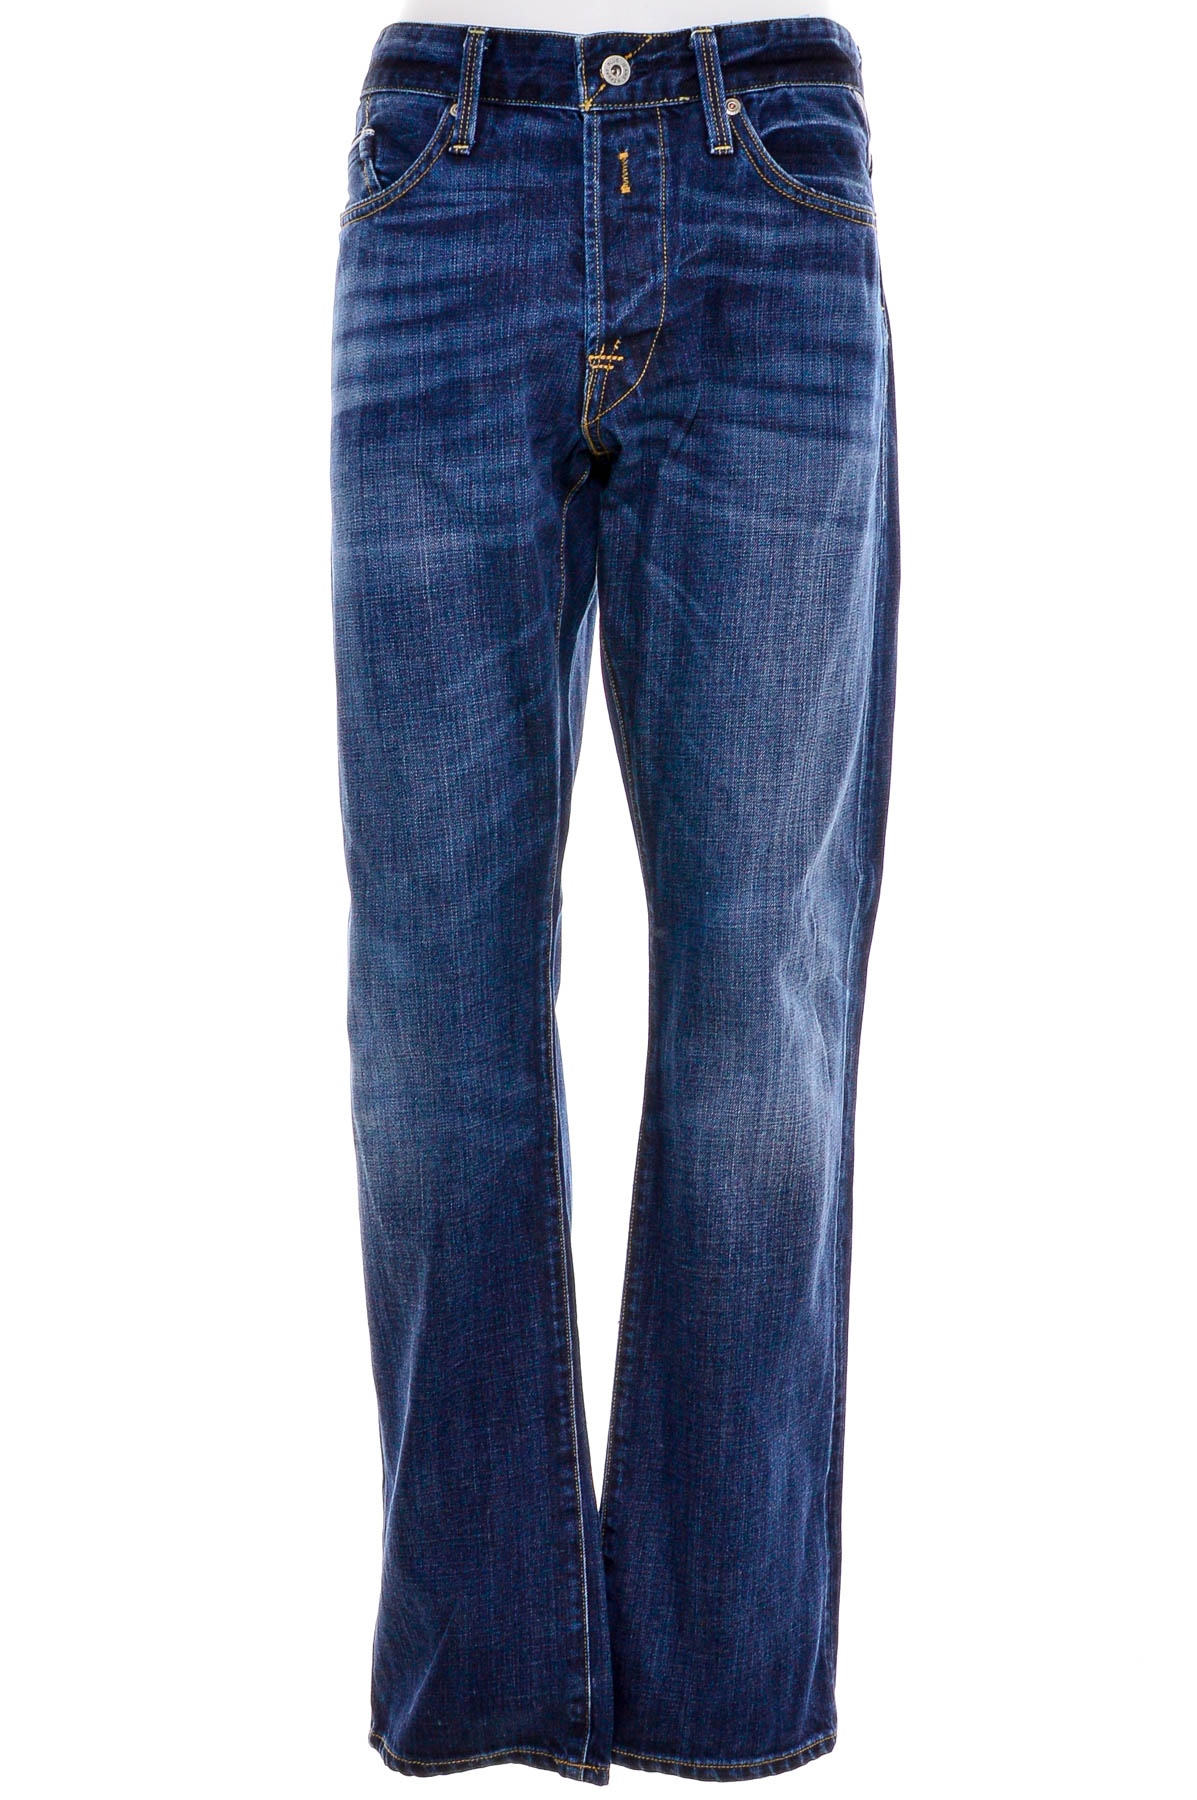 Men's jeans - REPLAY - 0